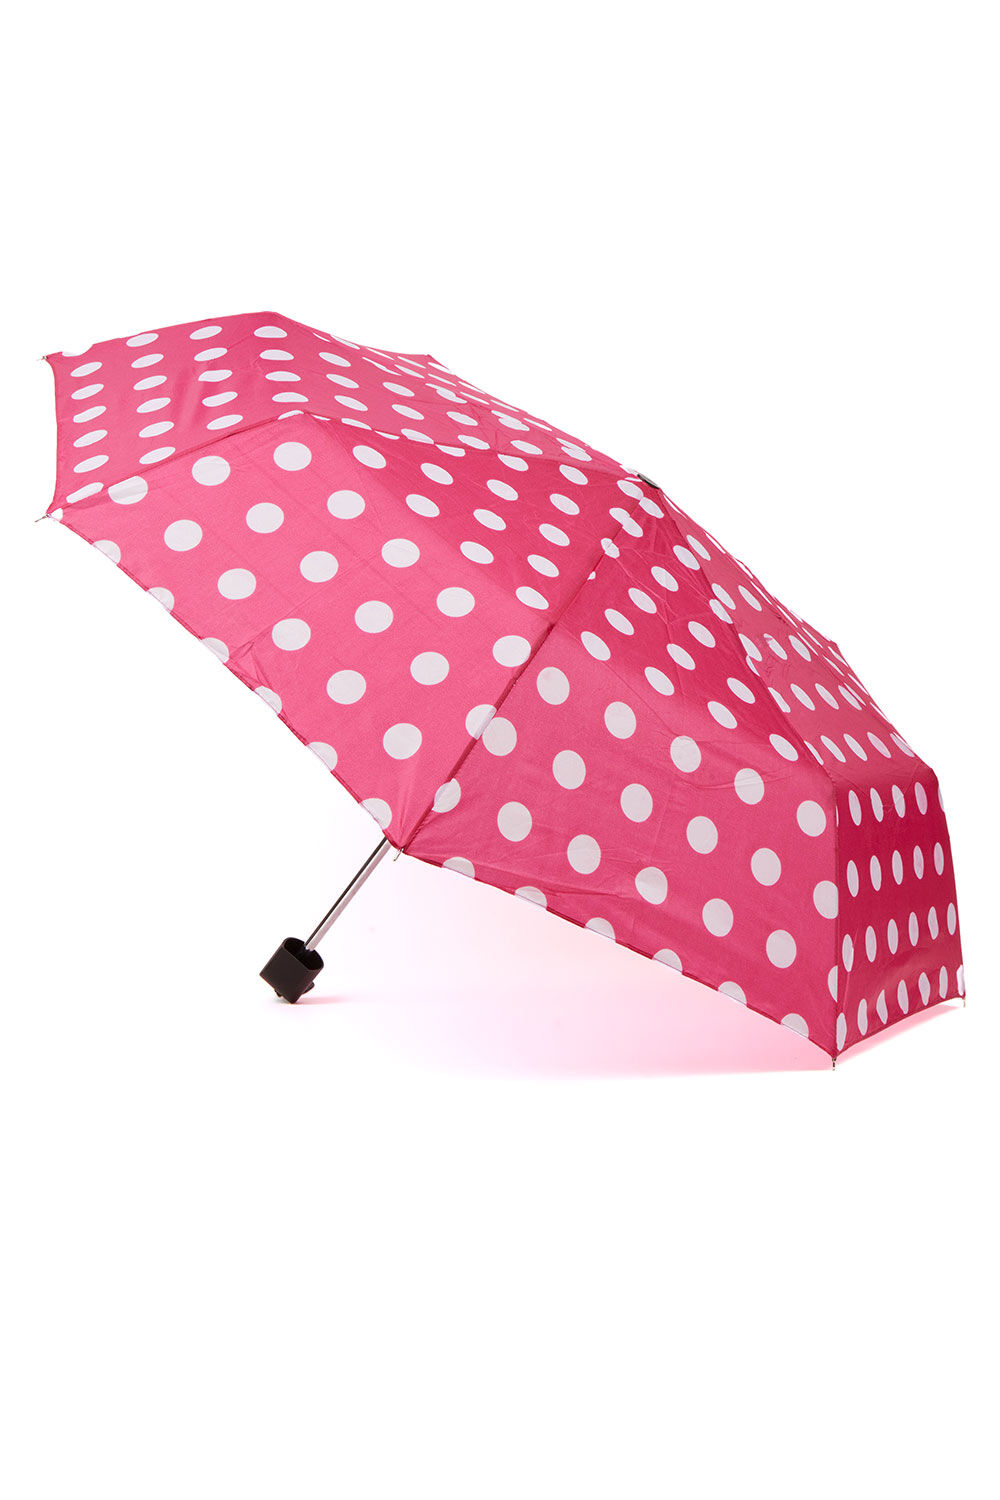 Bonmarche Pink/white Spot Design Umbrella, Size: One Size